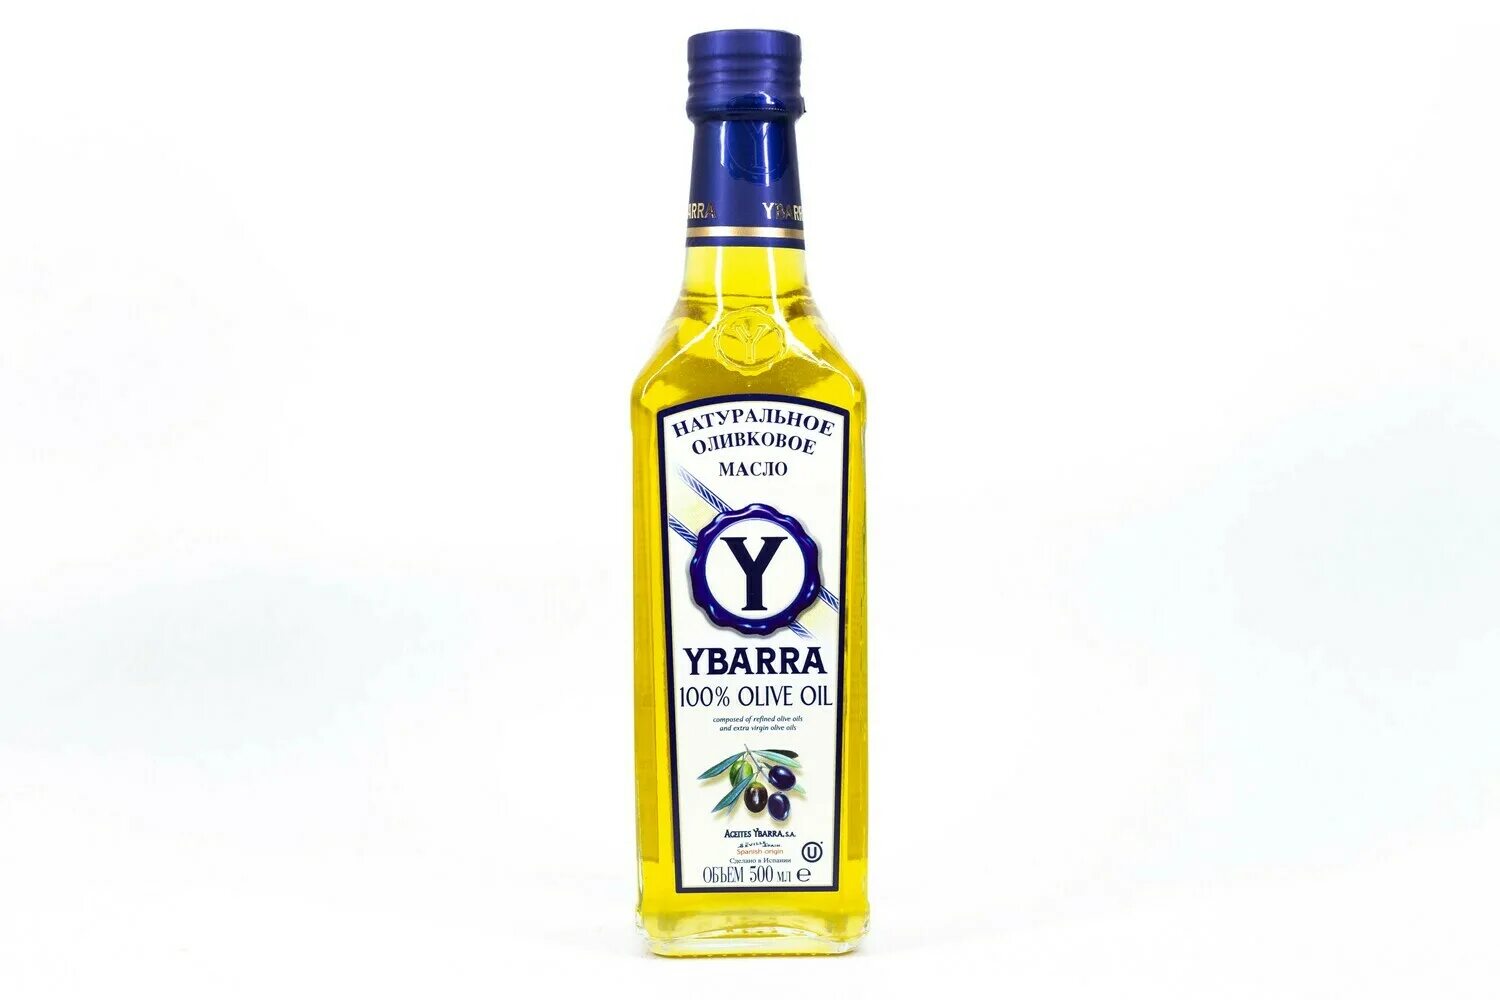 Масло оливковое рафинированное. Масло Ябарра. Ybarra масло оливковое Extra Virgin. Рафинированное оливковое масло для жарки. Оливковое масло высшего качества